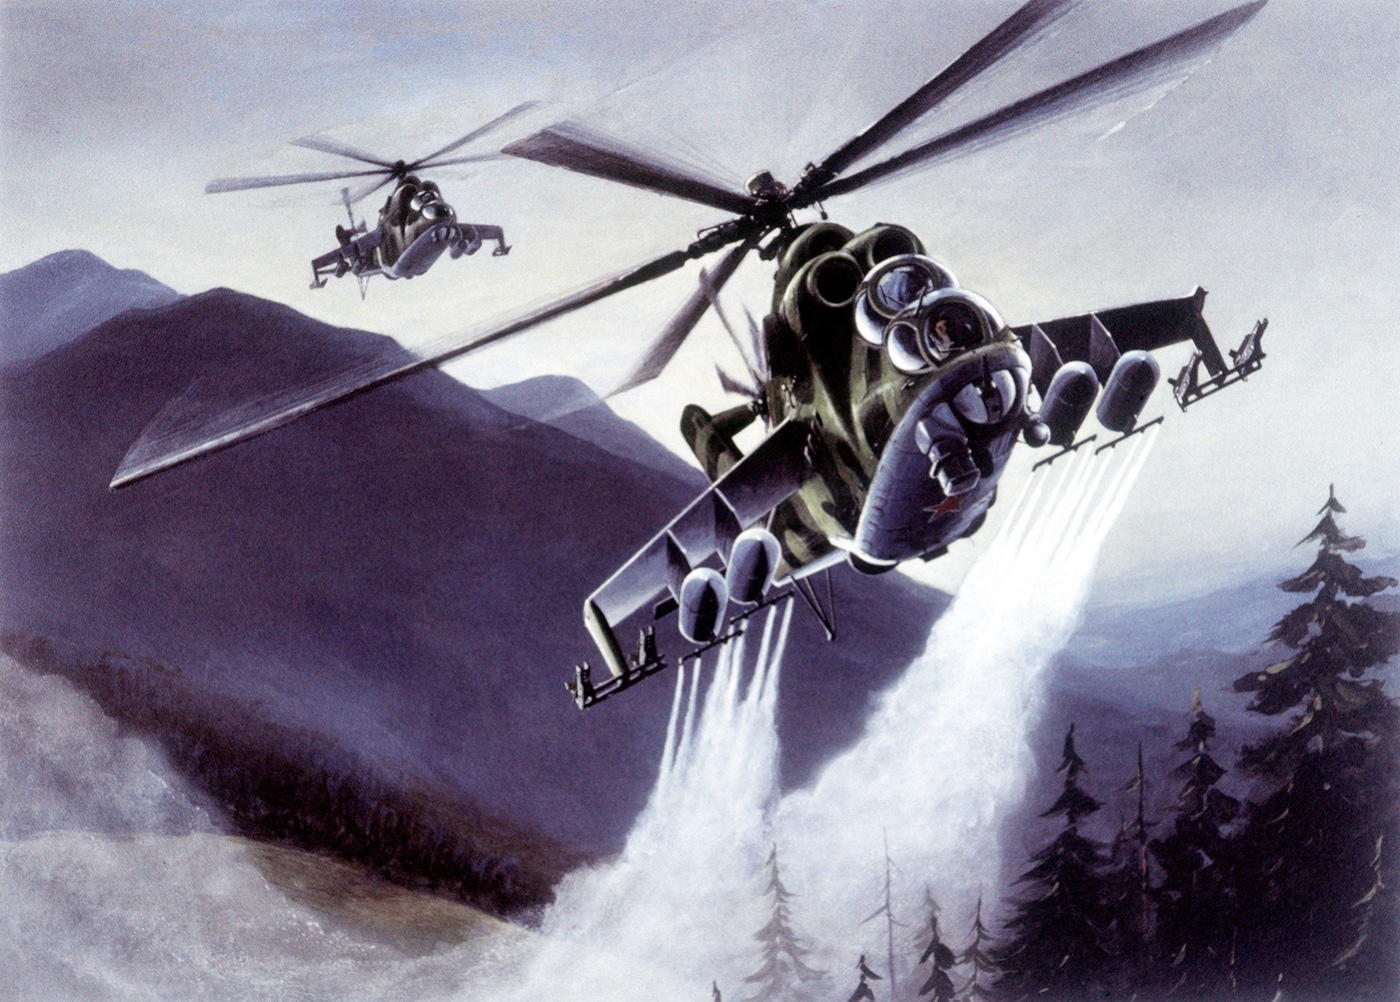 artist rendition of mi-24 delivering chemicals